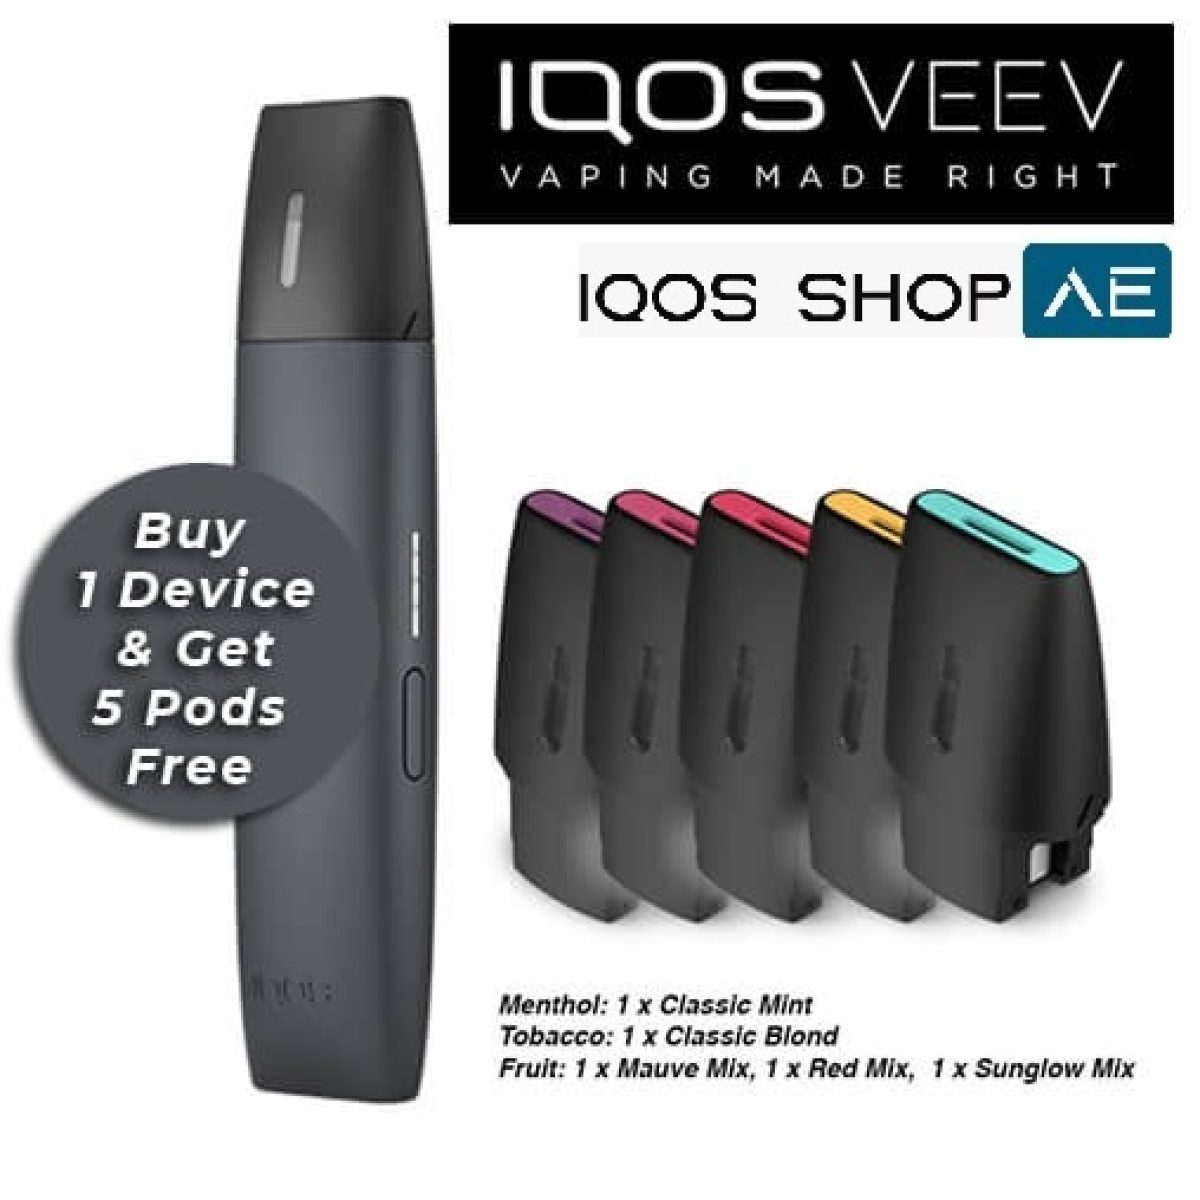 IOQS 3 Duo Kit Velvet Grey in Dubai -Gen Vape Dubai